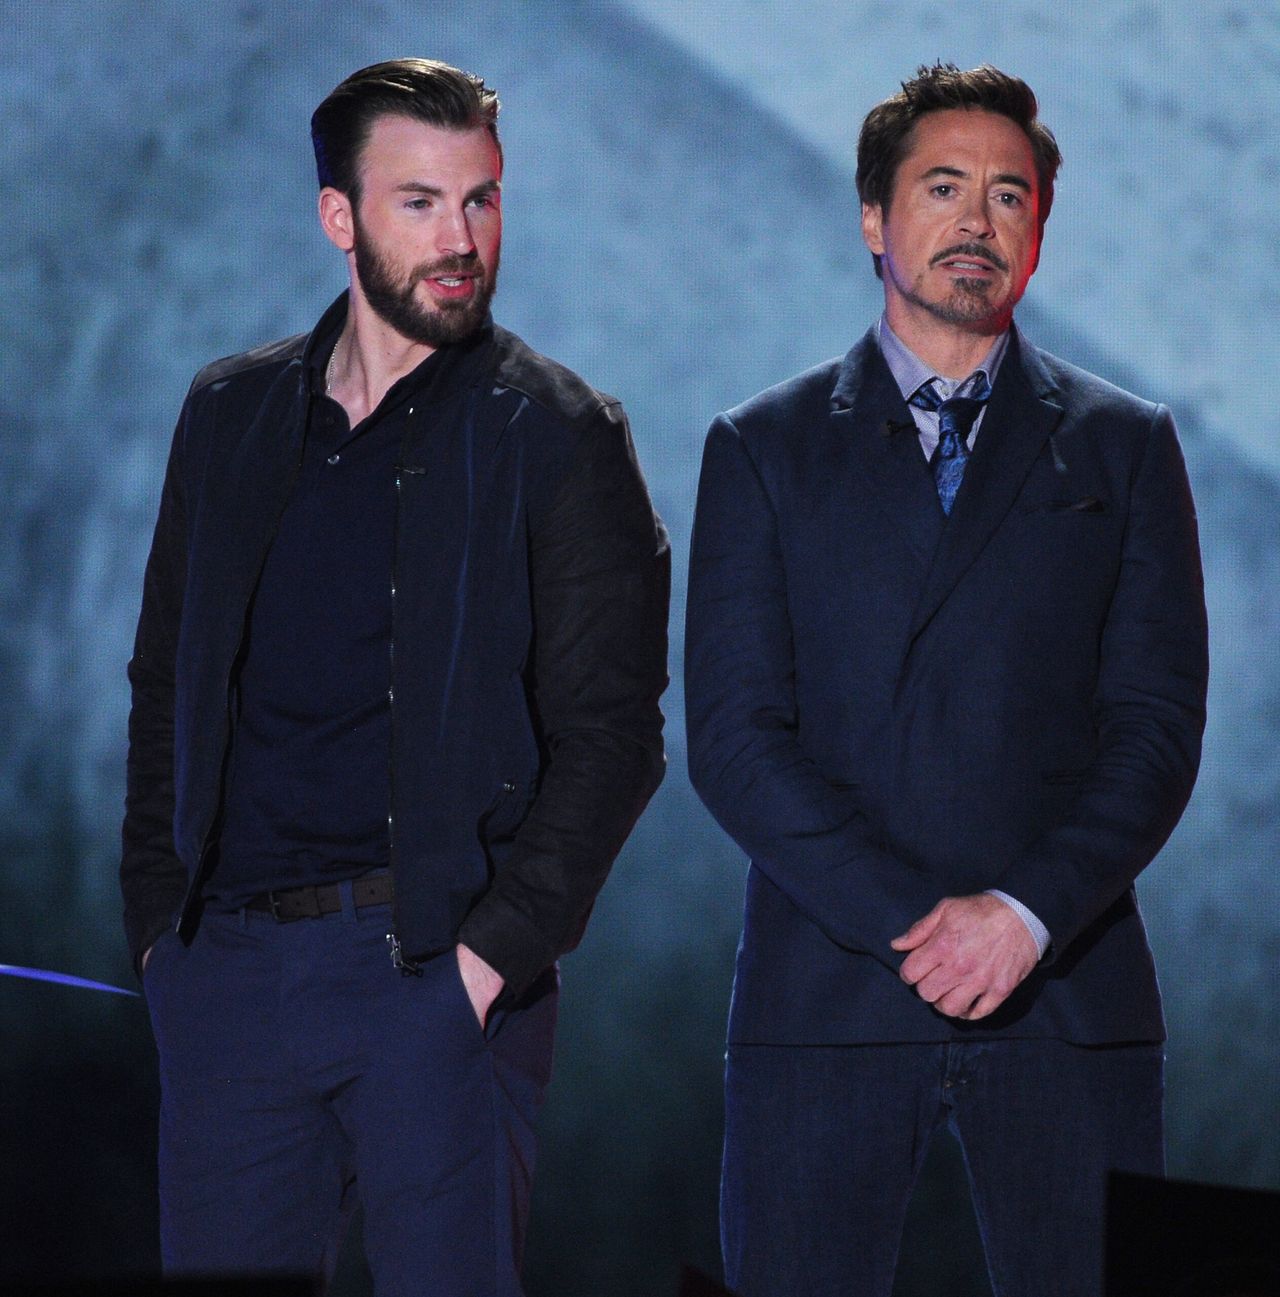 Robert Downey Jr. wcielał się w postać Iron Mana